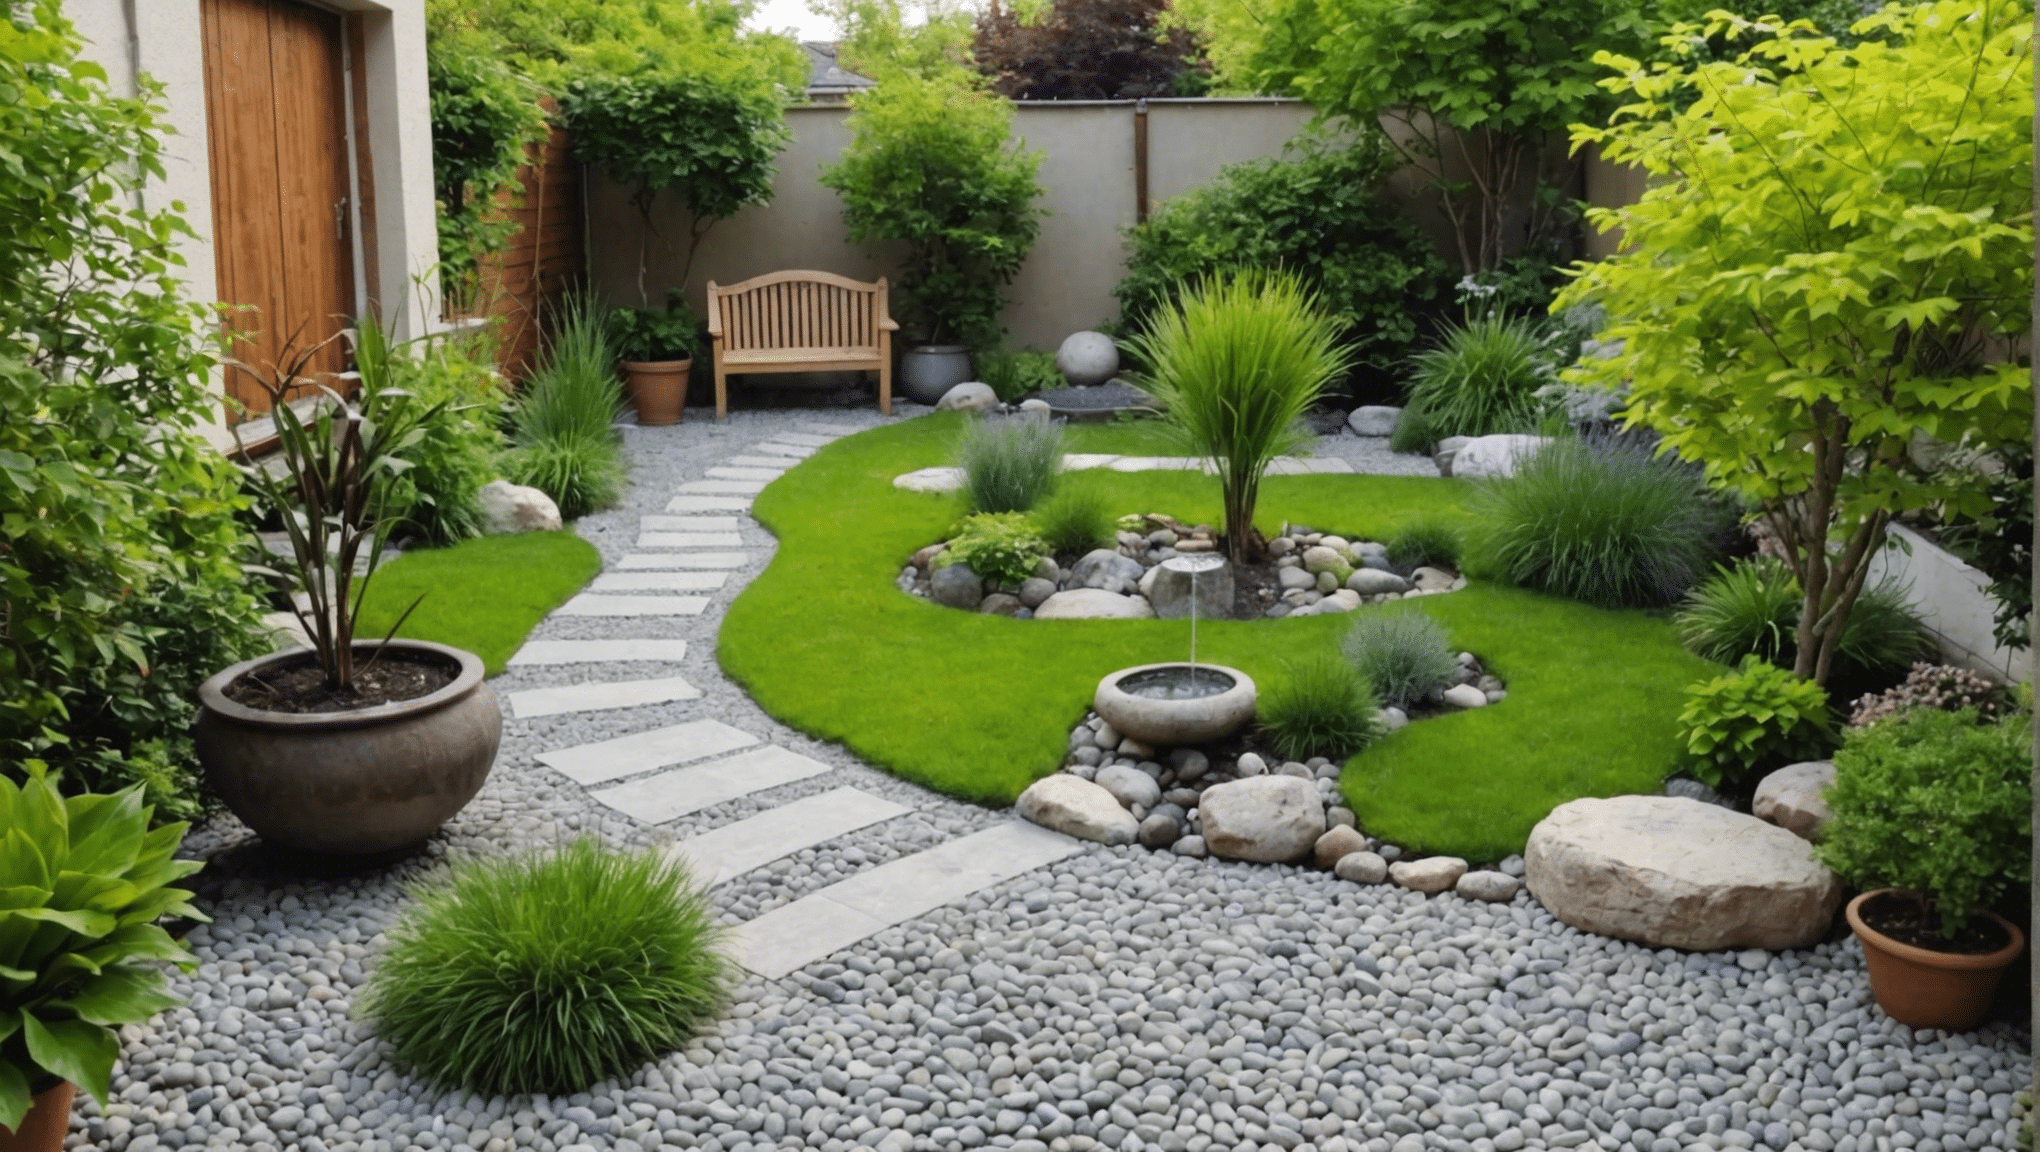 découvrez comment créer un petit jardin zen pour apporter sérénité et harmonie à votre espace de vie.